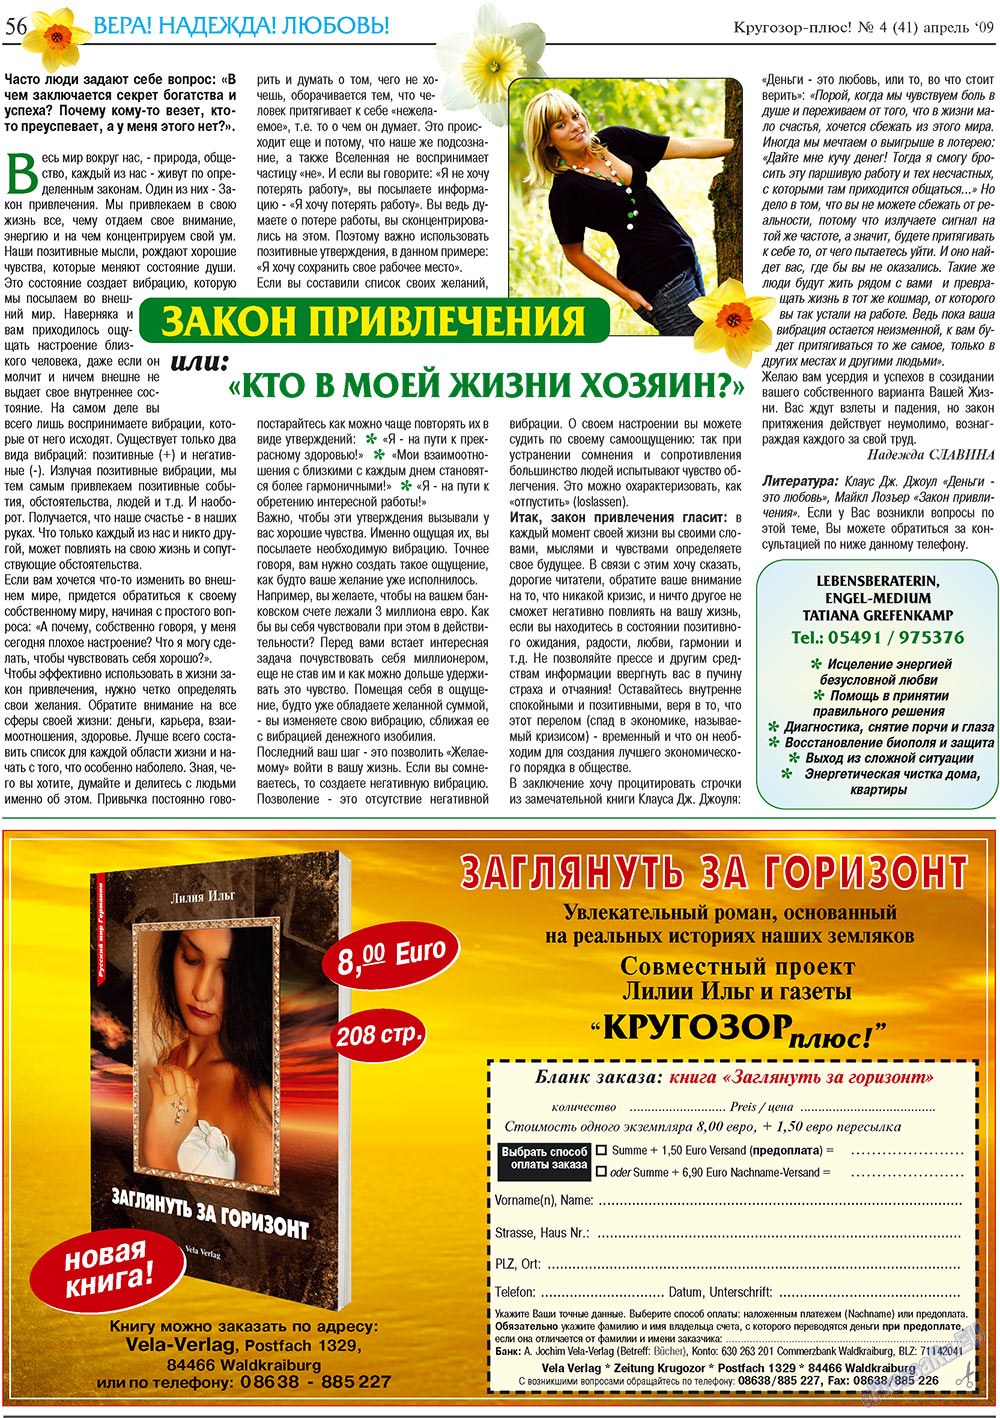 Кругозор плюс!, газета. 2009 №4 стр.56